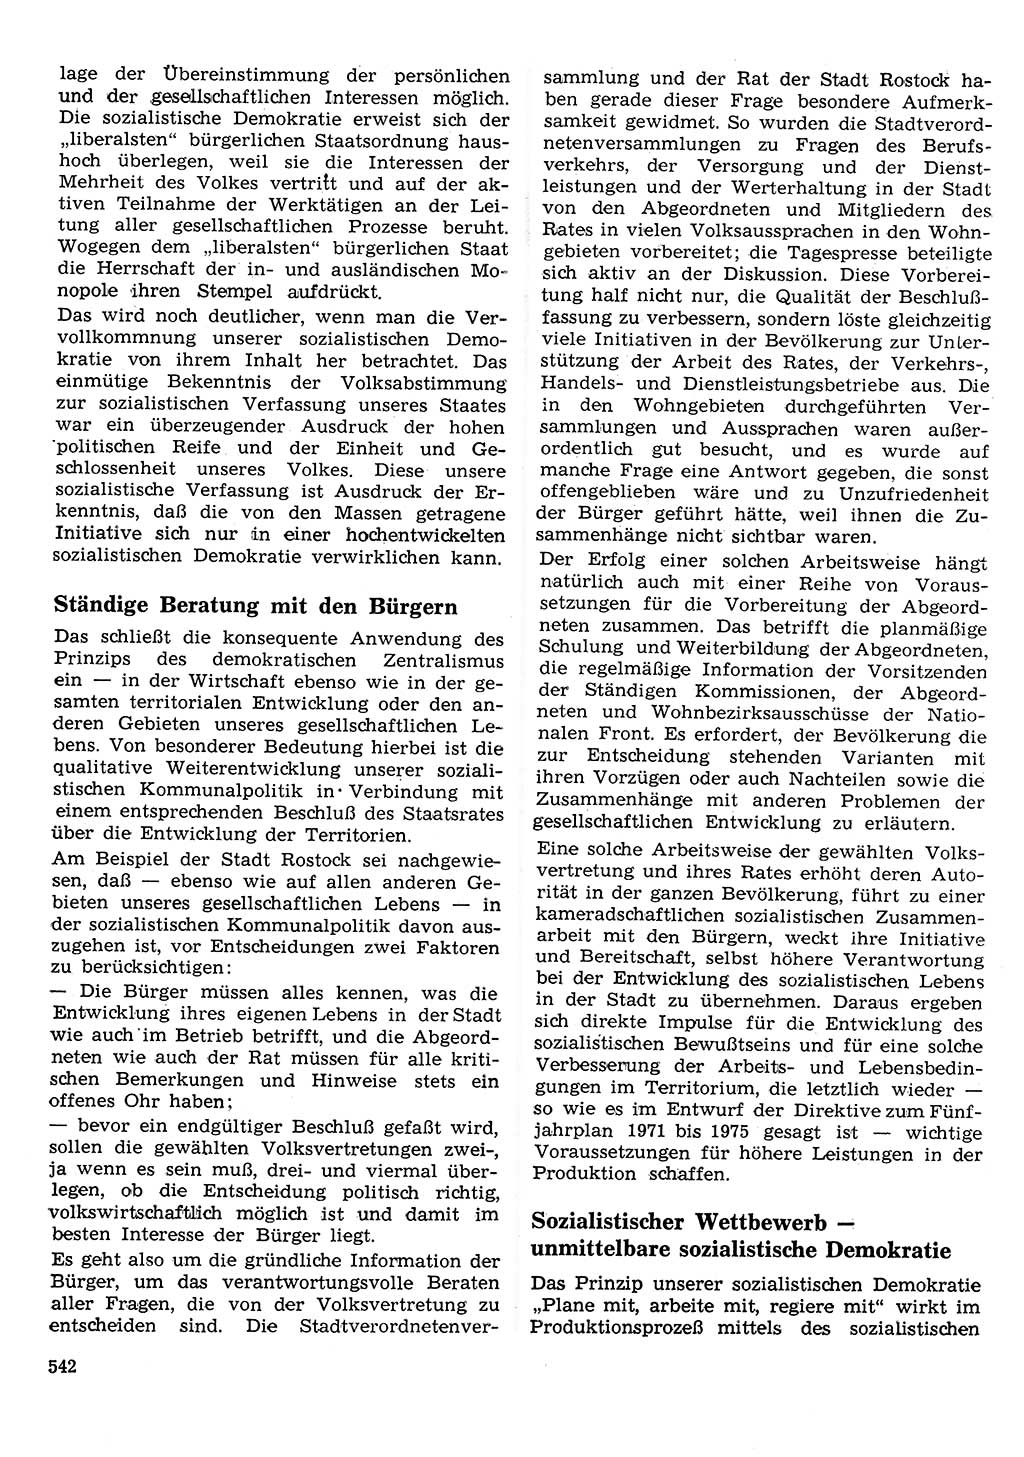 Neuer Weg (NW), Organ des Zentralkomitees (ZK) der SED (Sozialistische Einheitspartei Deutschlands) für Fragen des Parteilebens, 26. Jahrgang [Deutsche Demokratische Republik (DDR)] 1971, Seite 542 (NW ZK SED DDR 1971, S. 542)